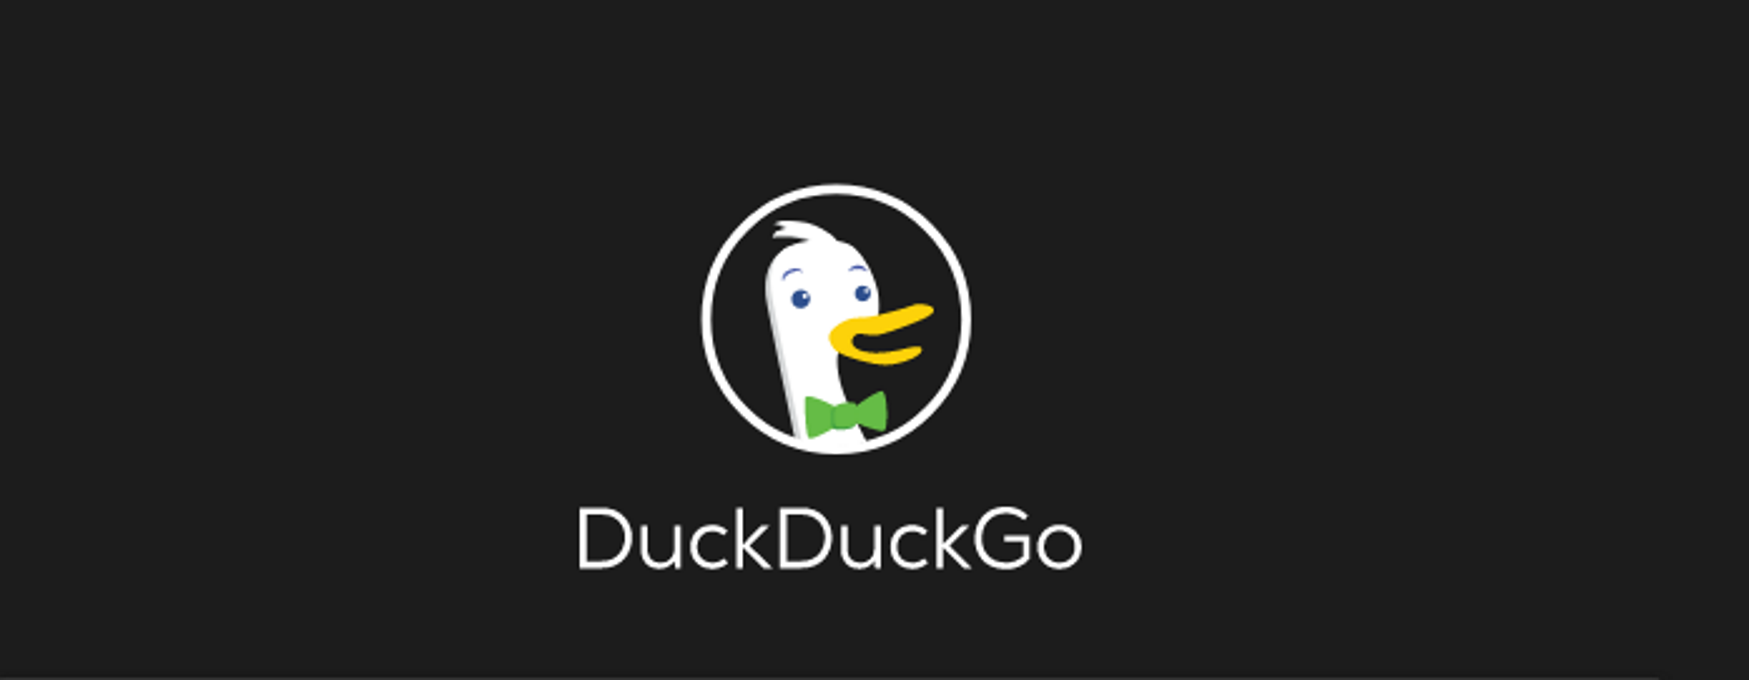 DuckDuckGo's logo